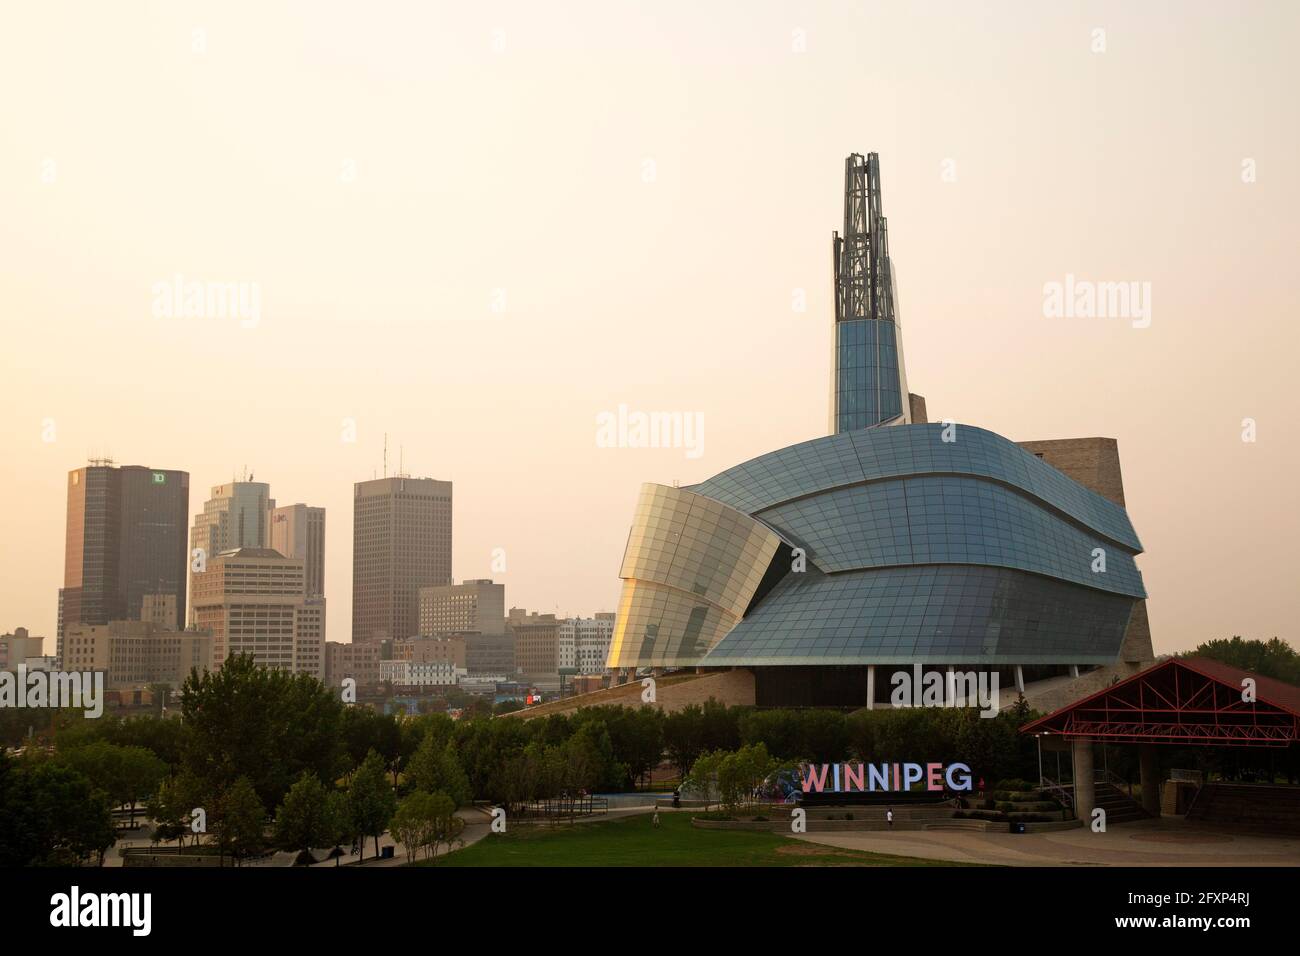 Lo skyline di Winnipeg, Canada, visto durante la sera. Il Canadian Museum for Human Rights si trova sulla destra della scena urbana. Foto Stock